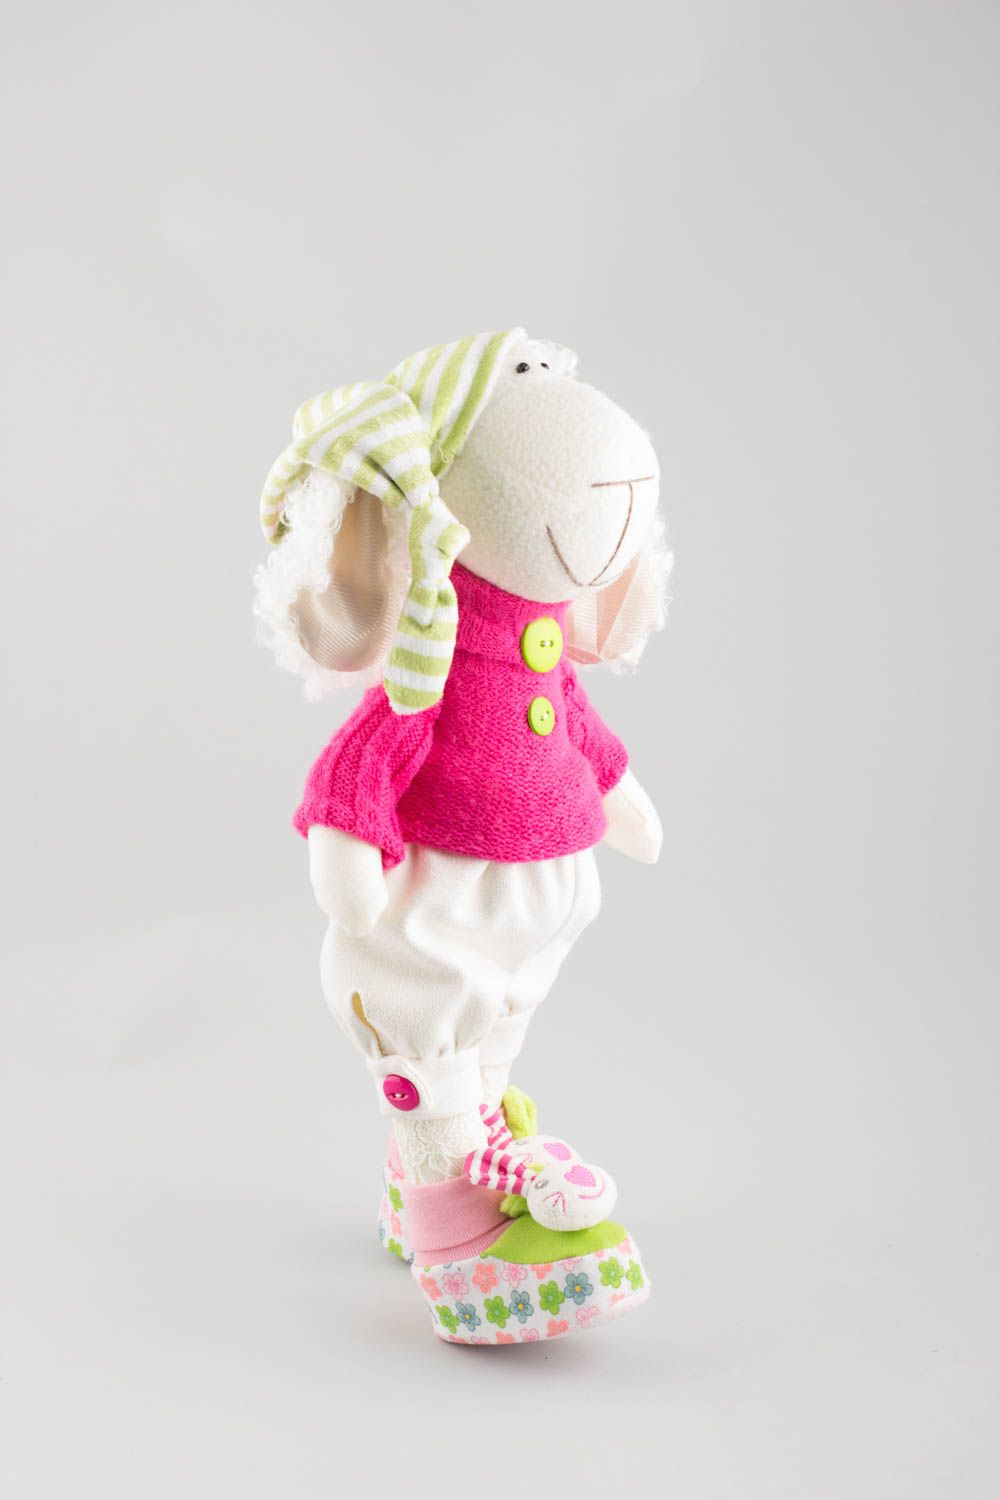 Textil Kuscheltier Schaf mit Mütze niedlich Spielzeug für Kinder und Dekor  foto 3